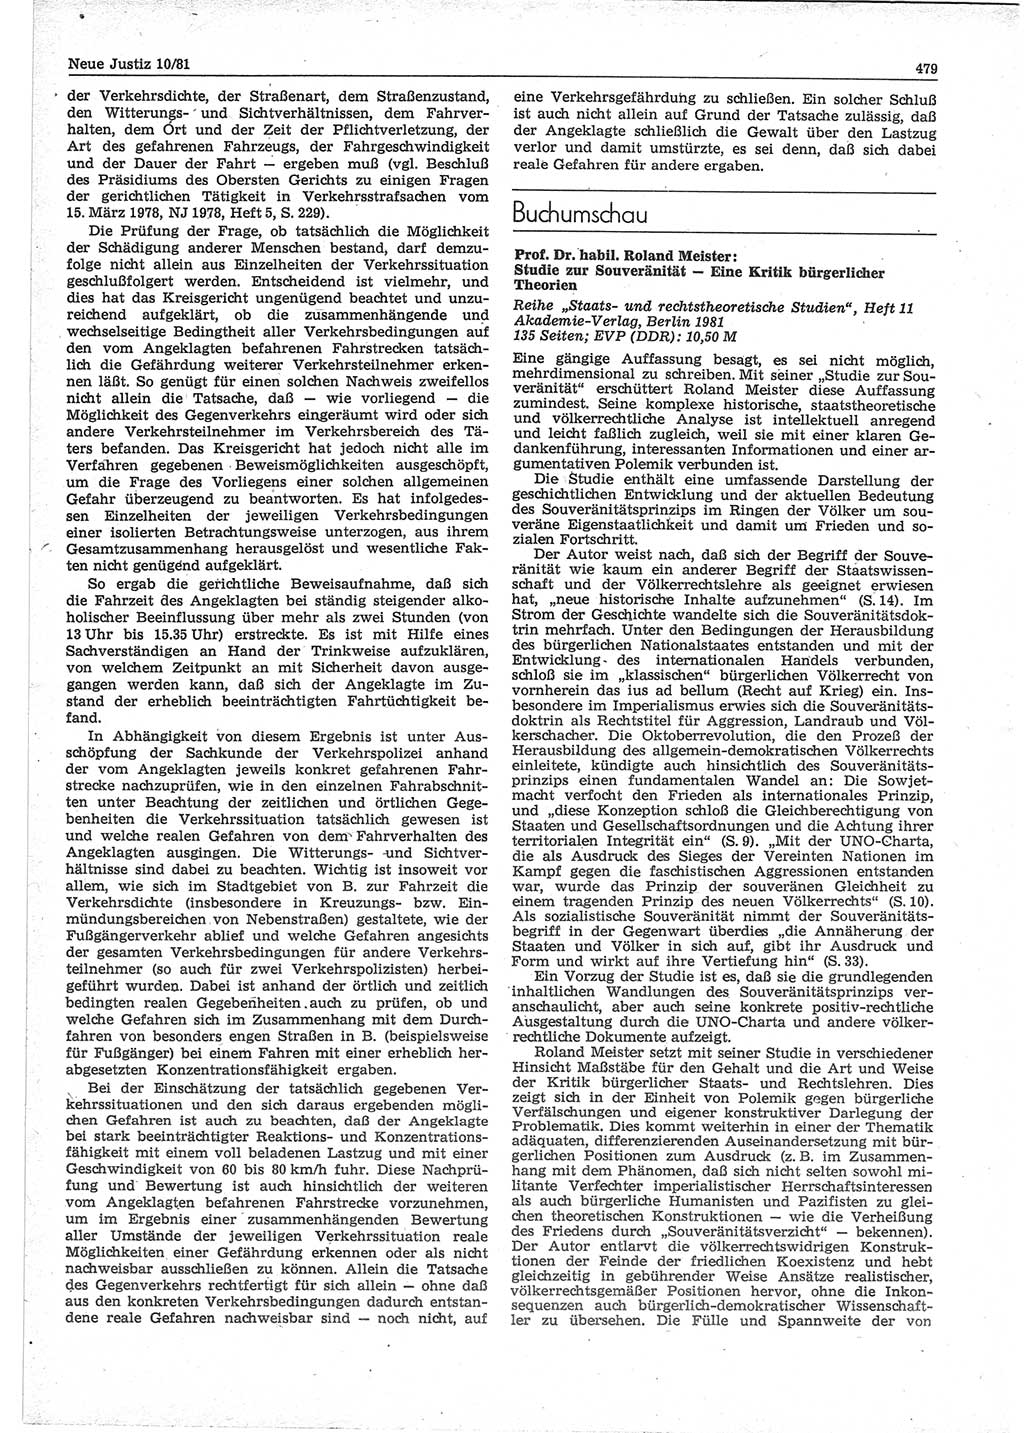 Neue Justiz (NJ), Zeitschrift für sozialistisches Recht und Gesetzlichkeit [Deutsche Demokratische Republik (DDR)], 35. Jahrgang 1981, Seite 479 (NJ DDR 1981, S. 479)